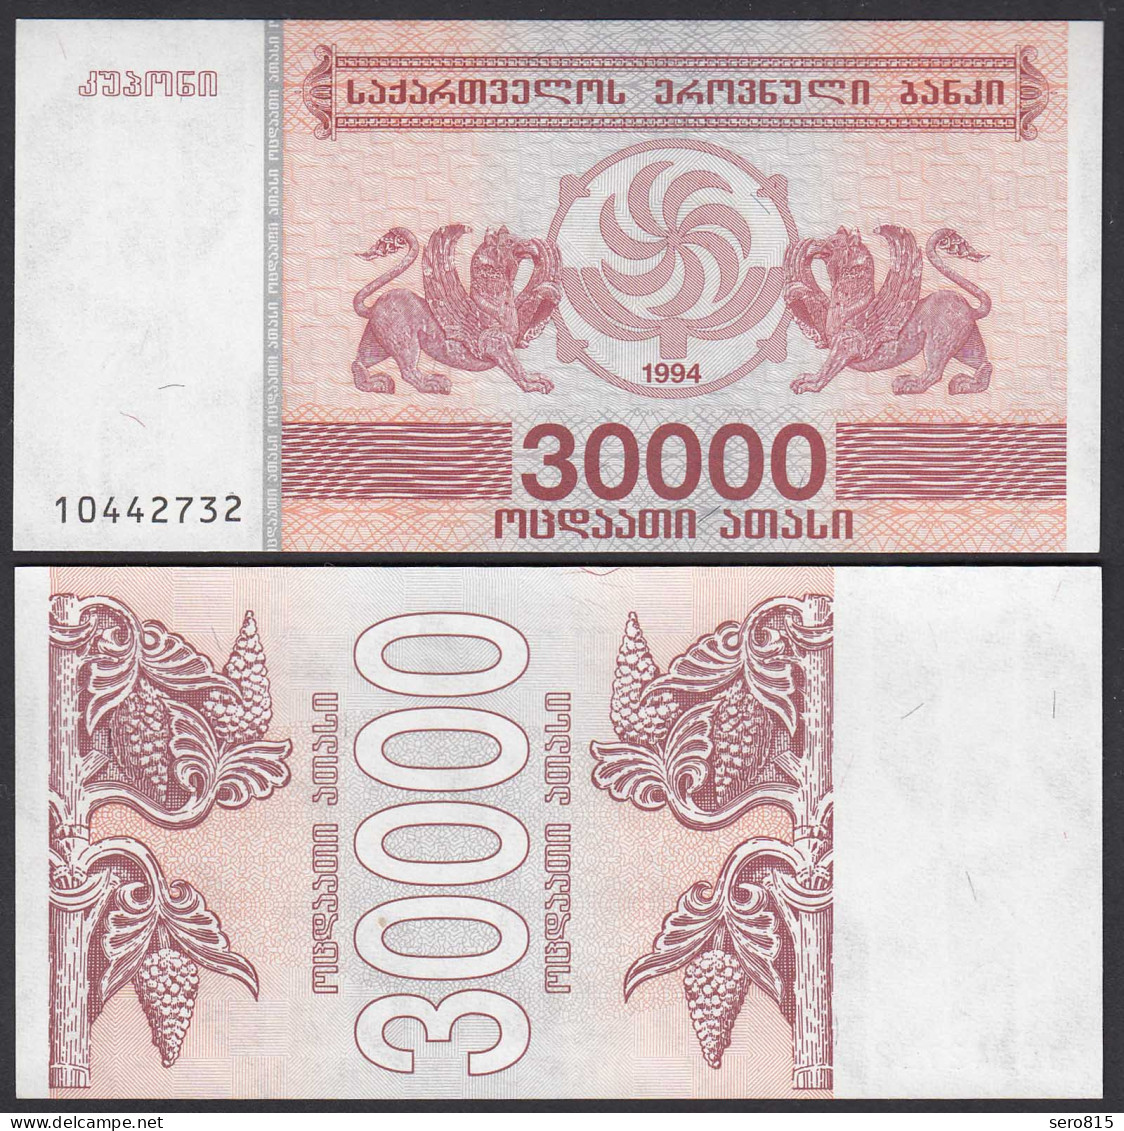  Georgien - Georgia 30000 30.000 Lari 1994 Pick 47 UNC (1)    (25577 - Sonstige – Asien